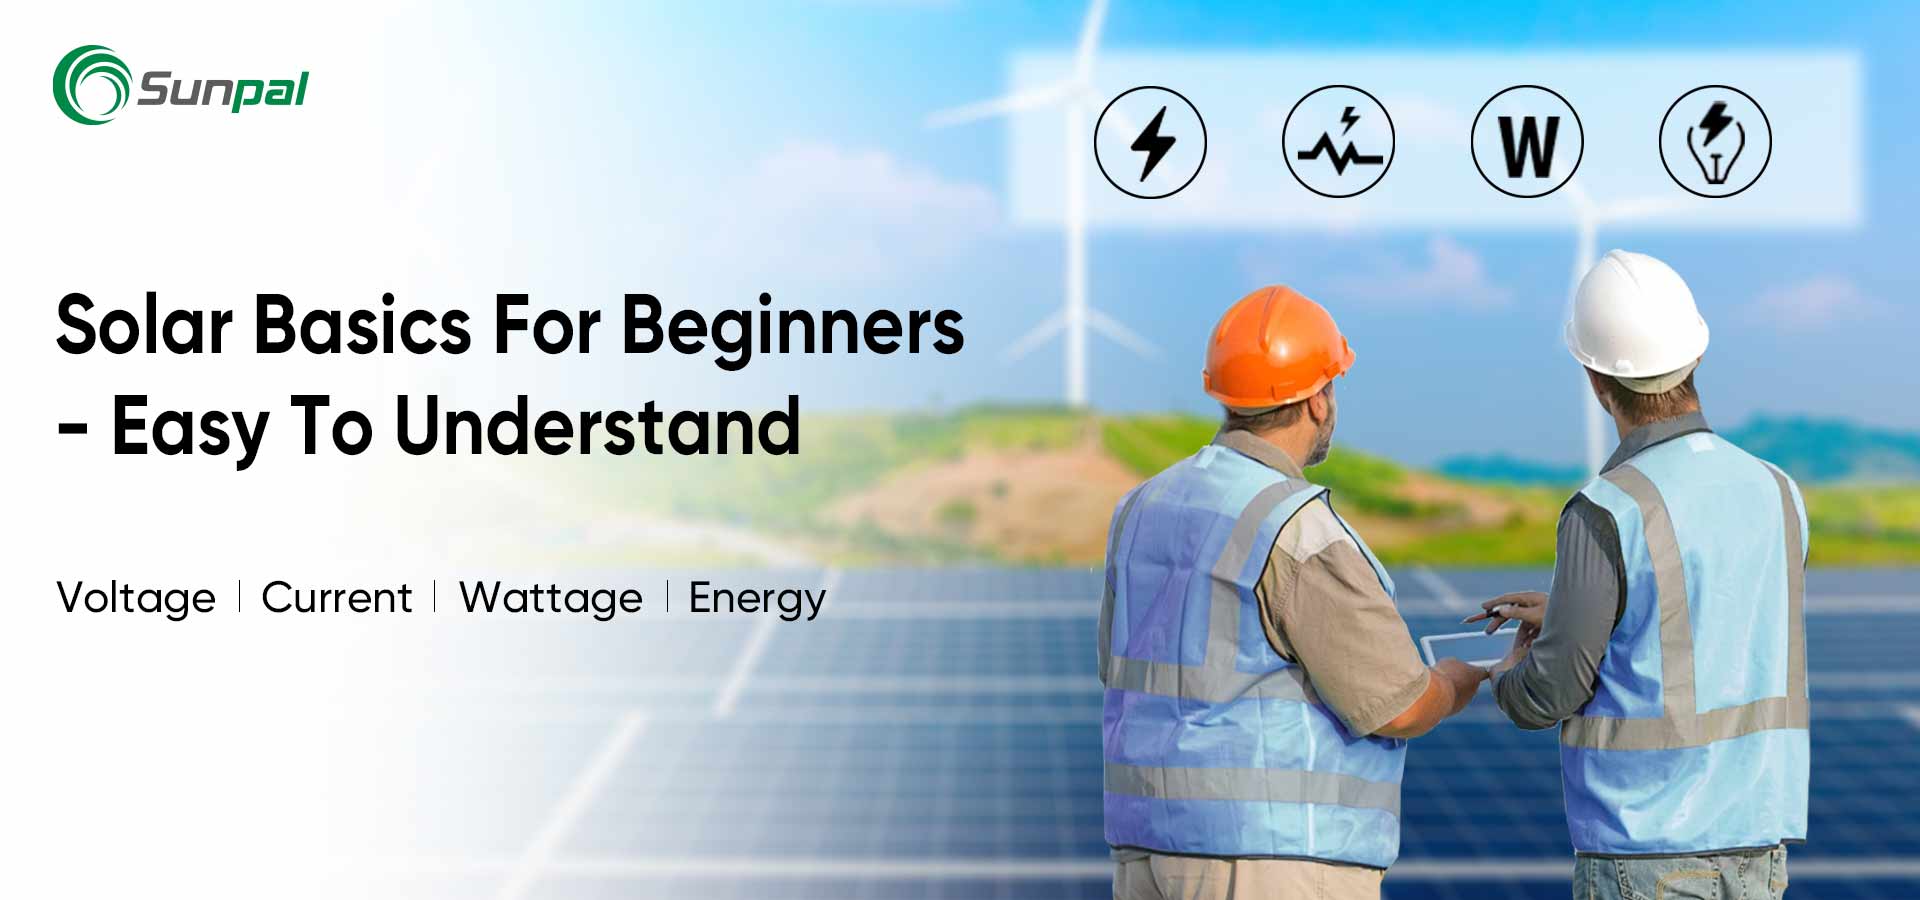 Noções básicas de energia solar para iniciantes: tensão/corrente/potência/energia mestre